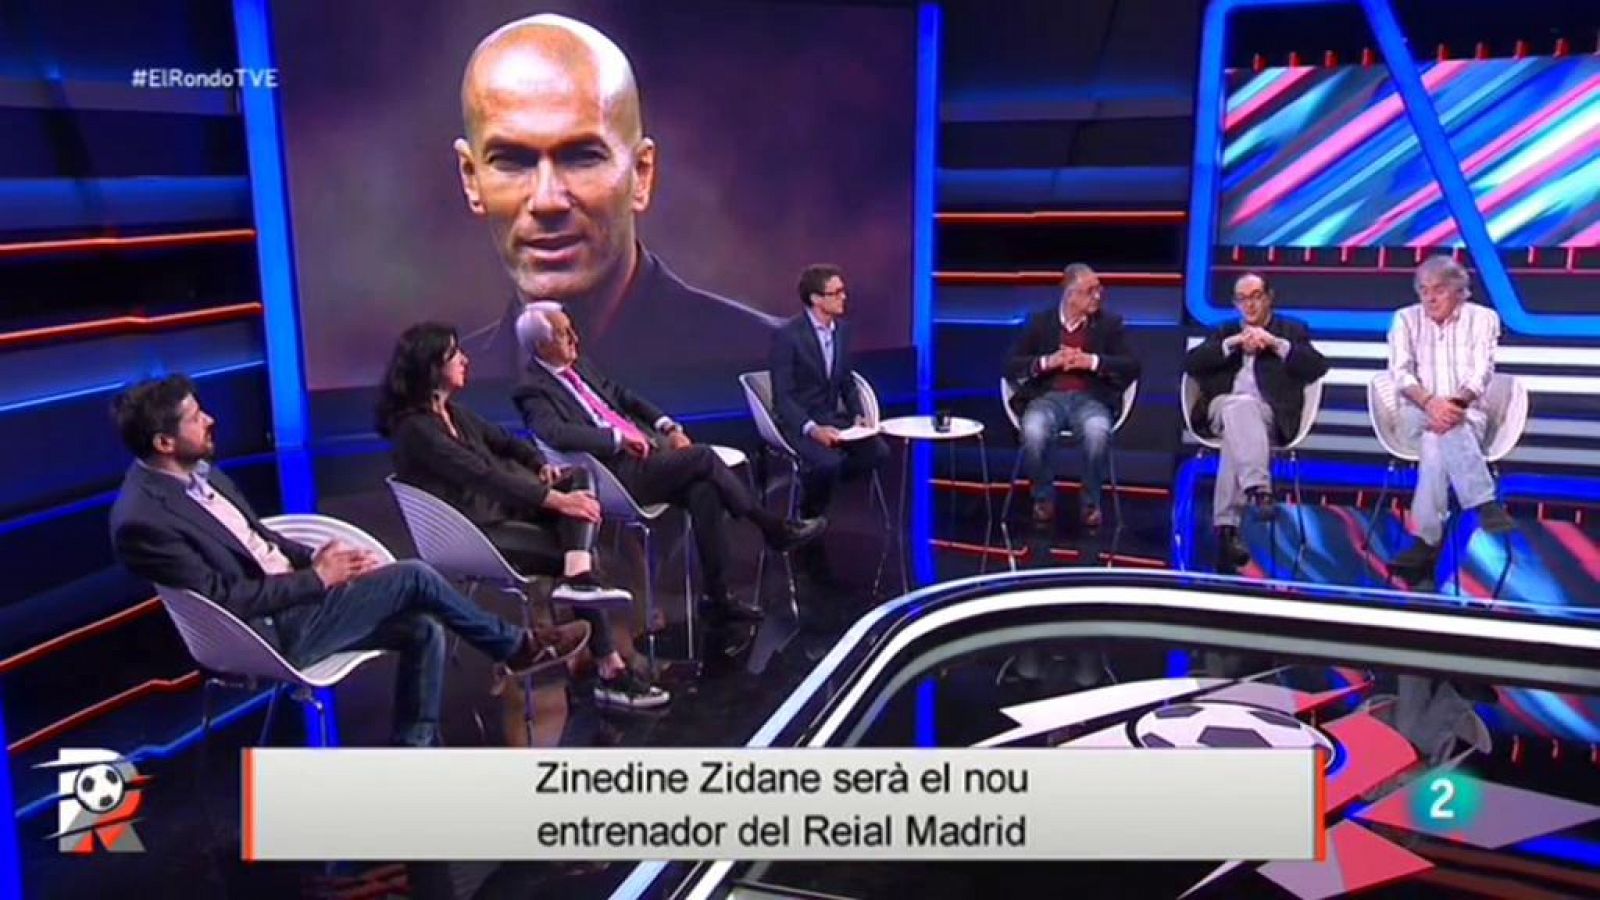 El Rondo | Zinedine Zidane nou entrenador del Reial Madrid